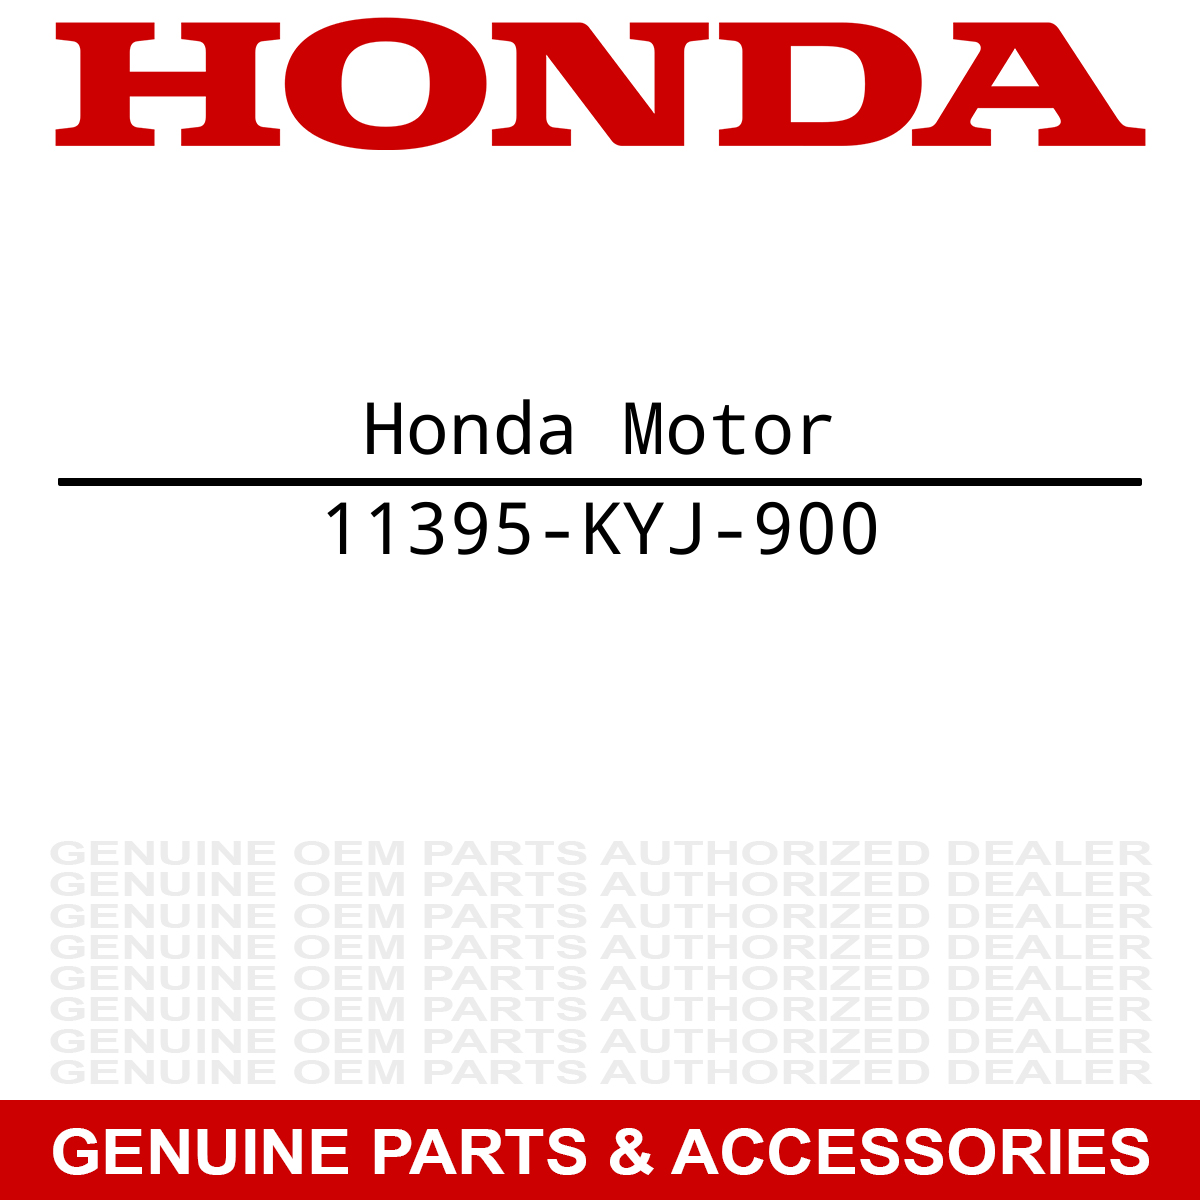 Honda 11395-KYJ-900 Gasket CRF250L CBR300R CBR250R CB300F CB300F CBR250R CBR300R CBR300R
Honda CRF250L